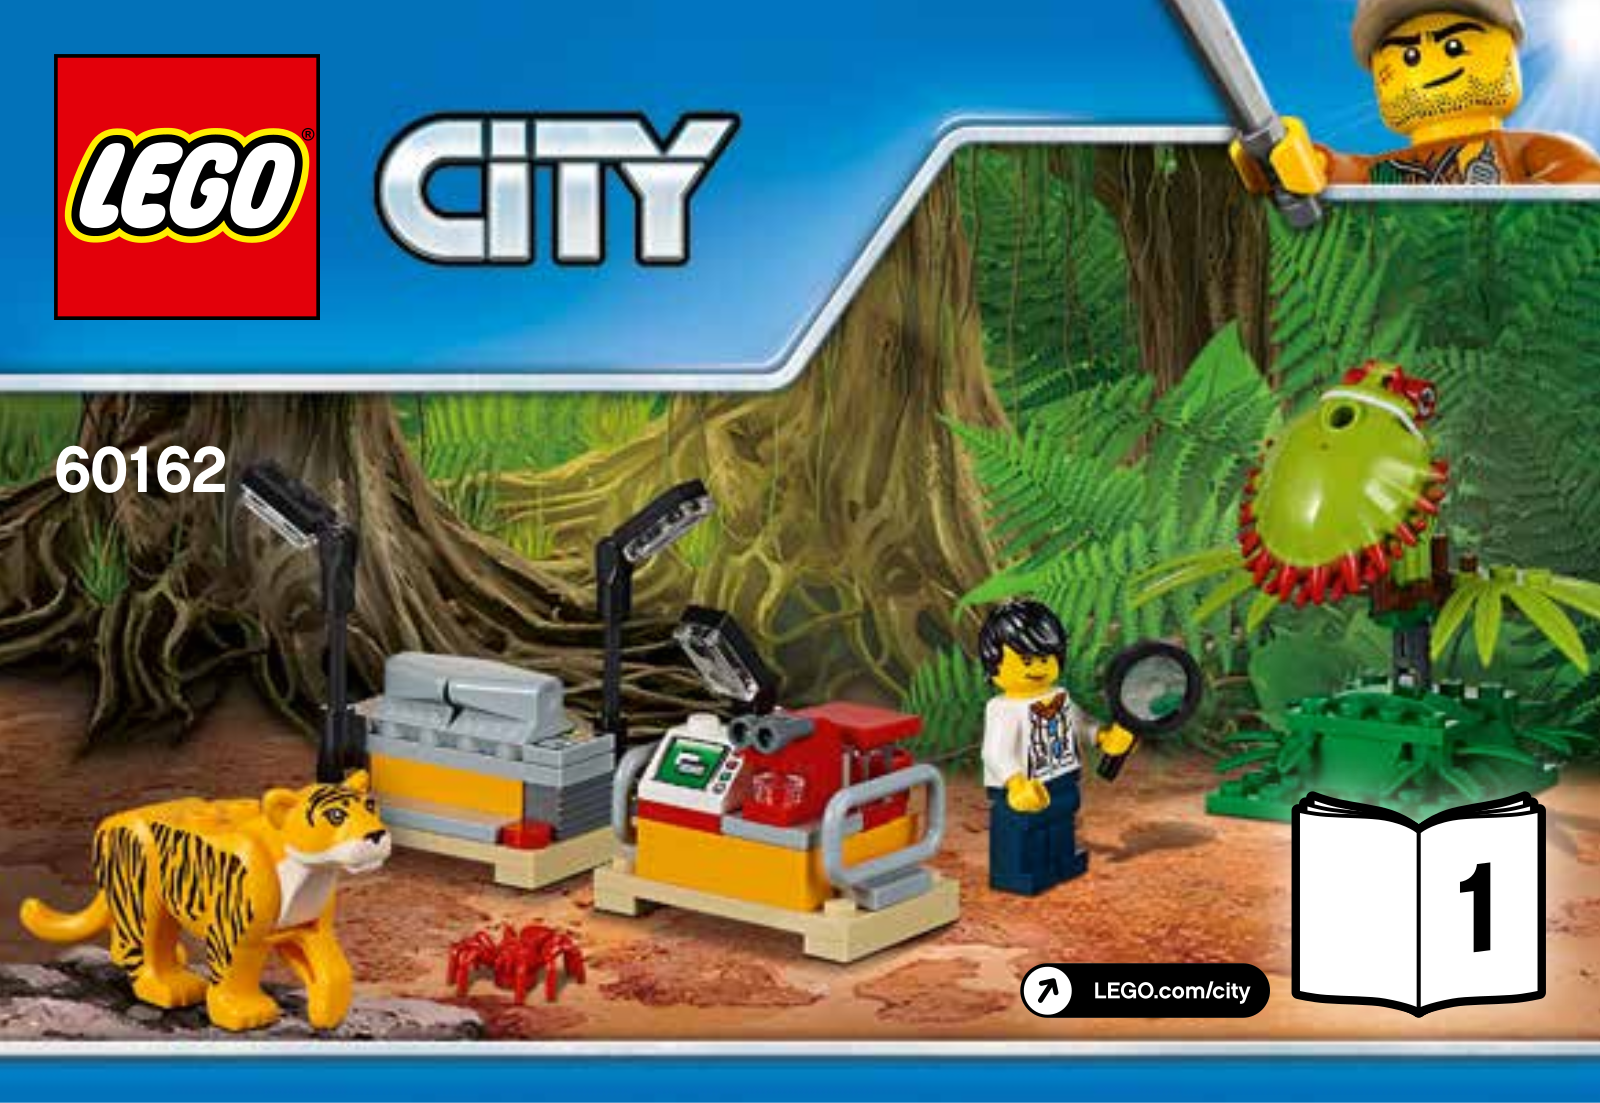 LEGO 60162 Instructions